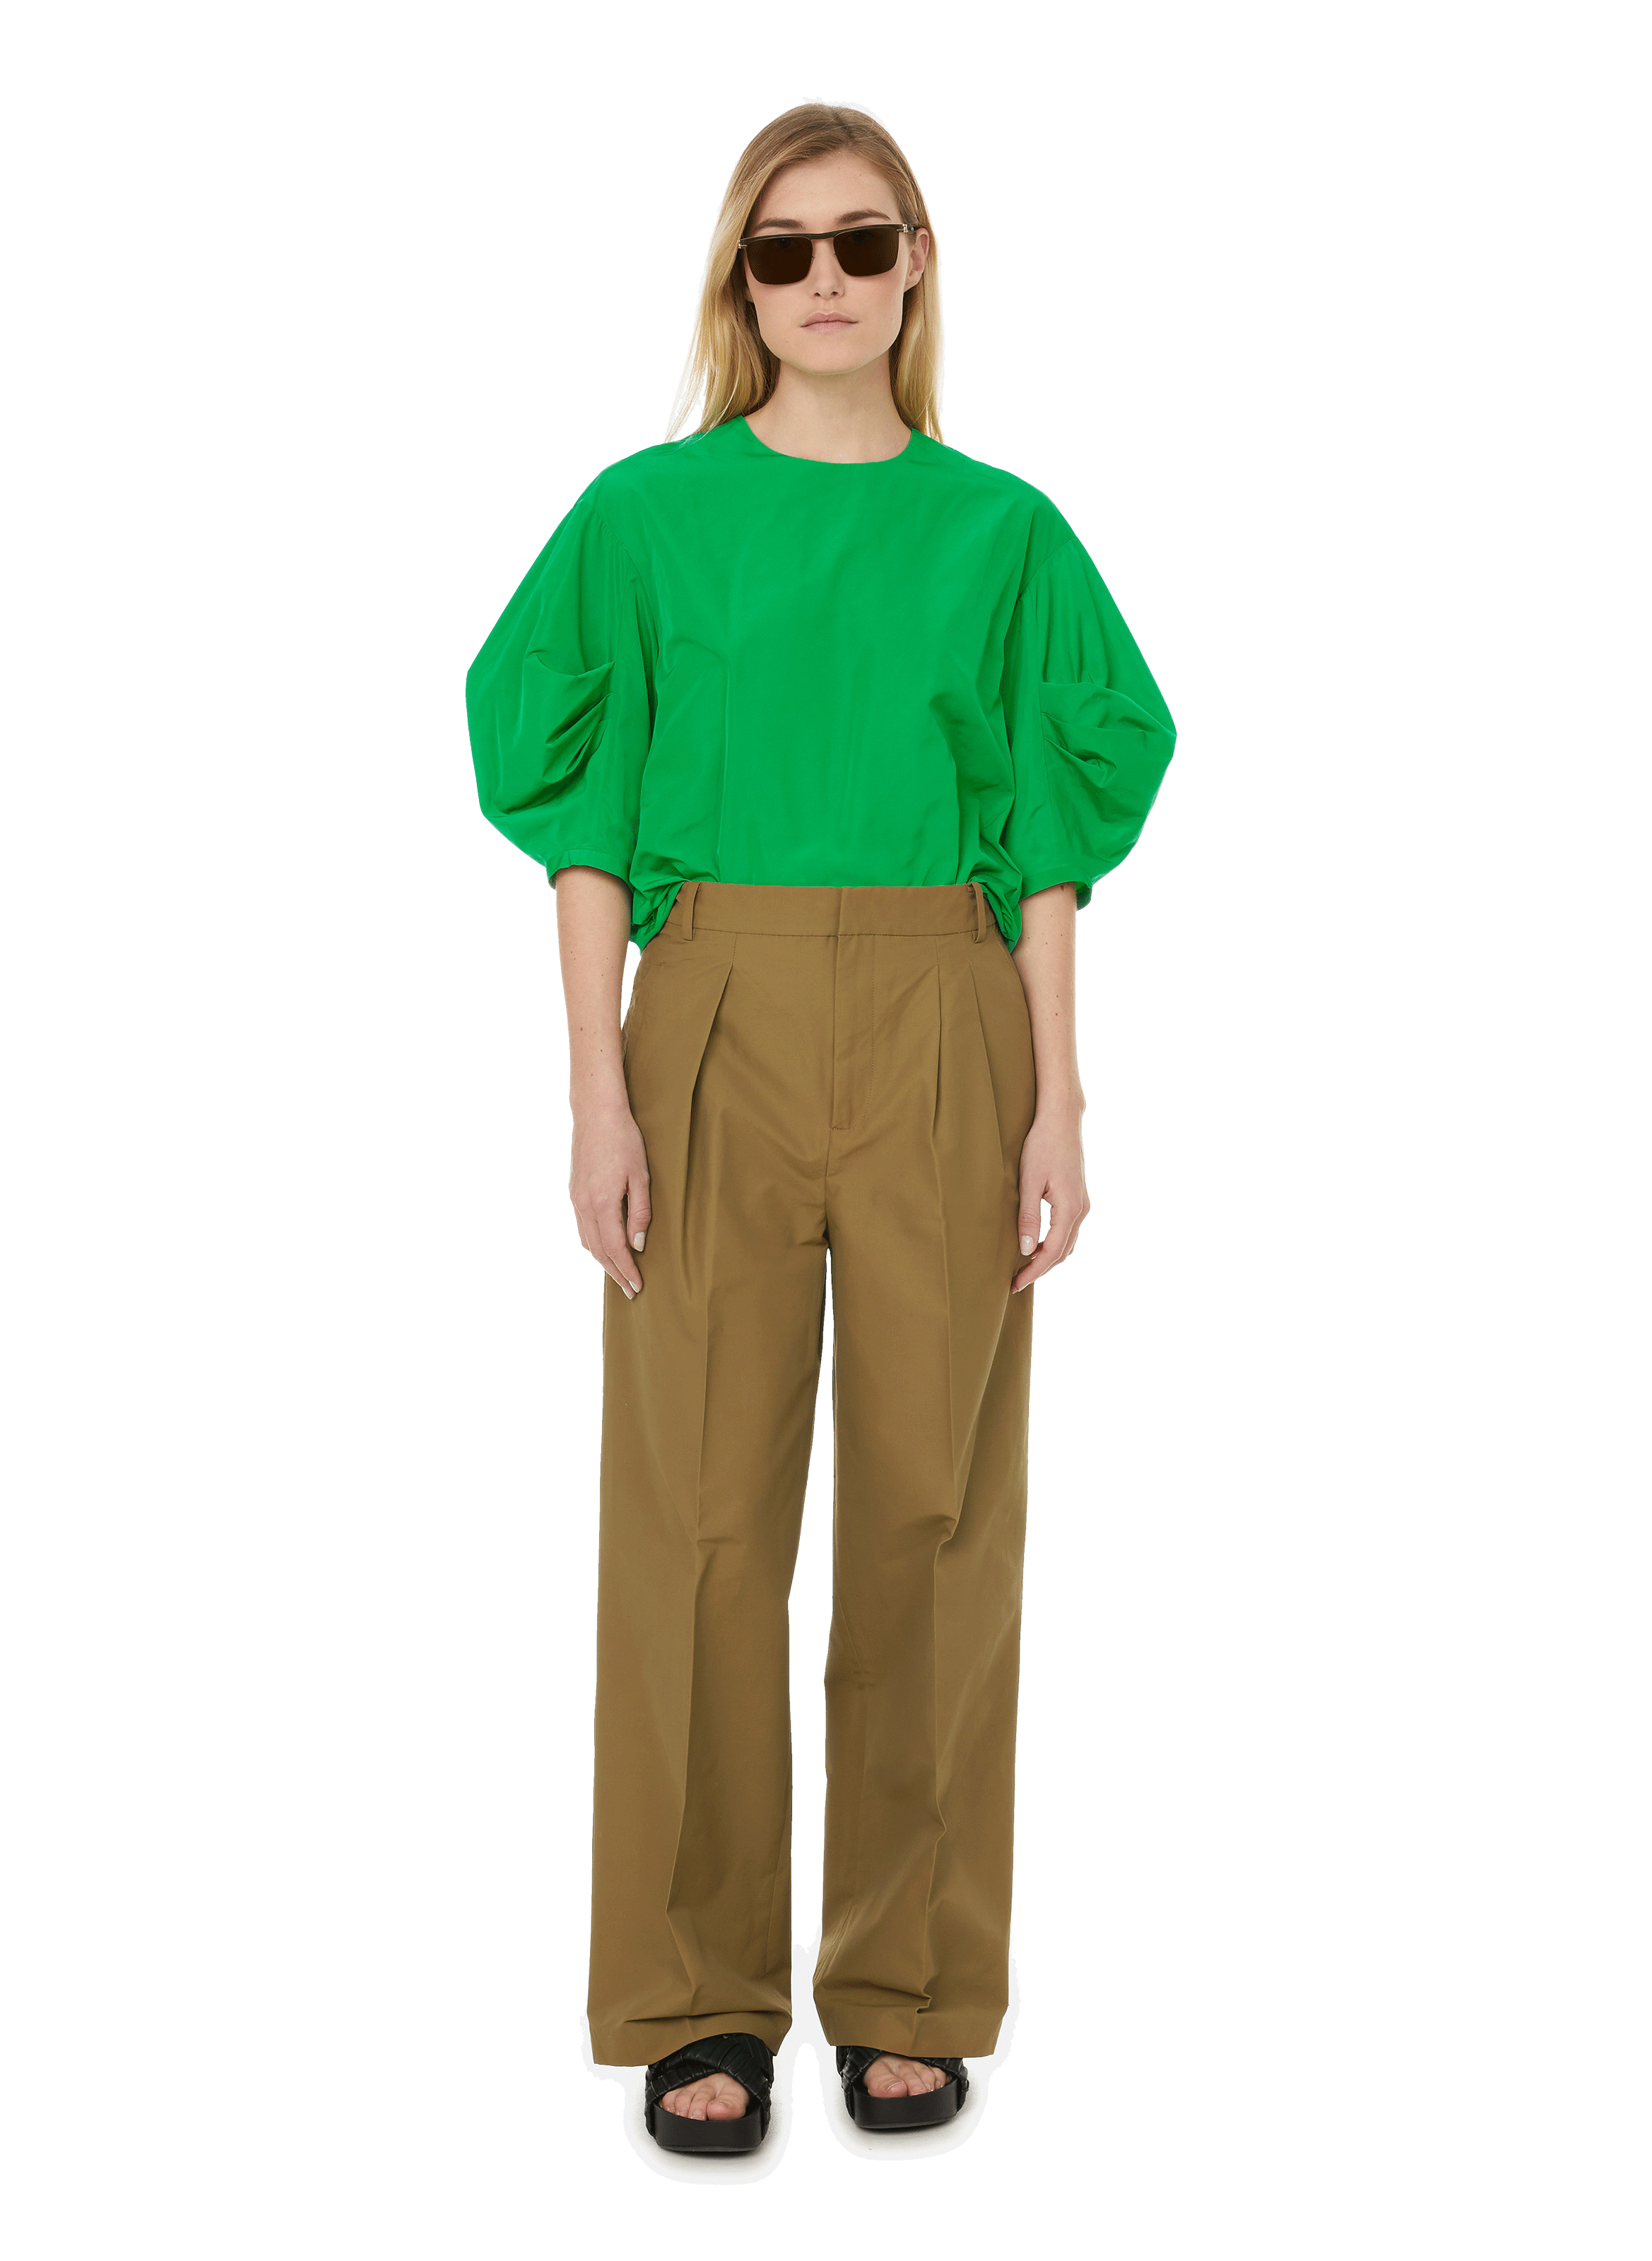 Femme Vêtements Tops Manches courtes Haut à manches bouffantes Synthétique Tibi en coloris Vert 